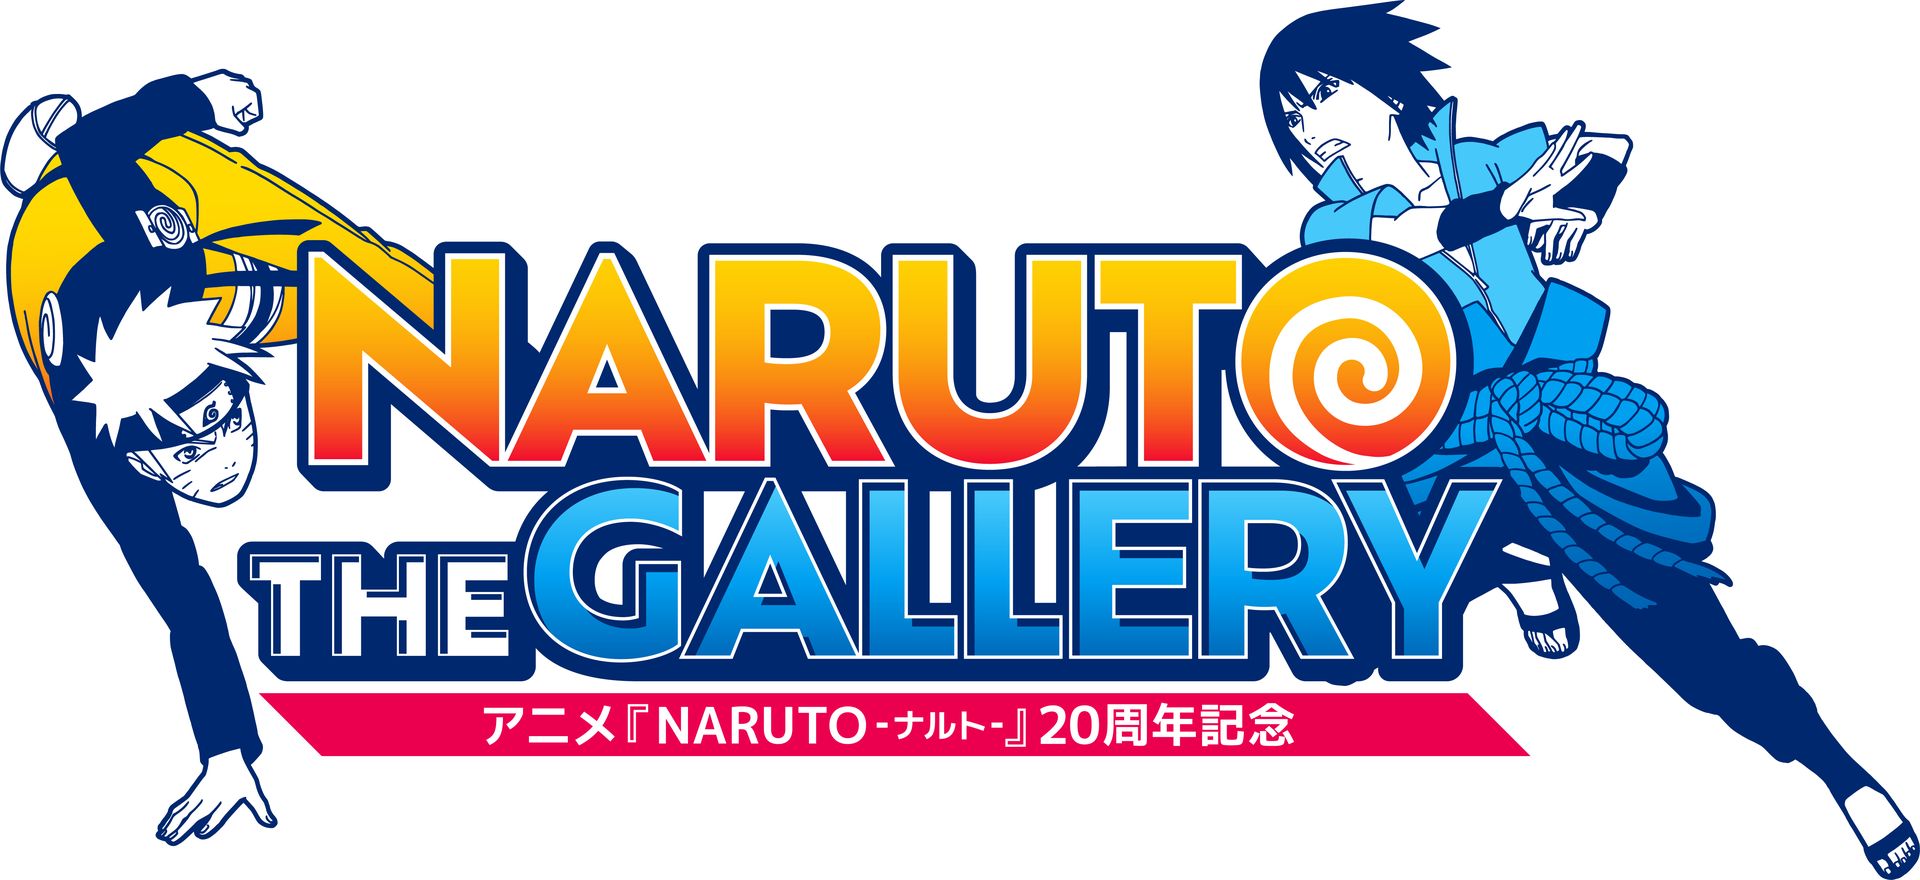 アニメ「NARUTO-ナルト-」の歴史を振り返る「20周年記念ギャラリー」が12月より開催決定 - GAME Watch